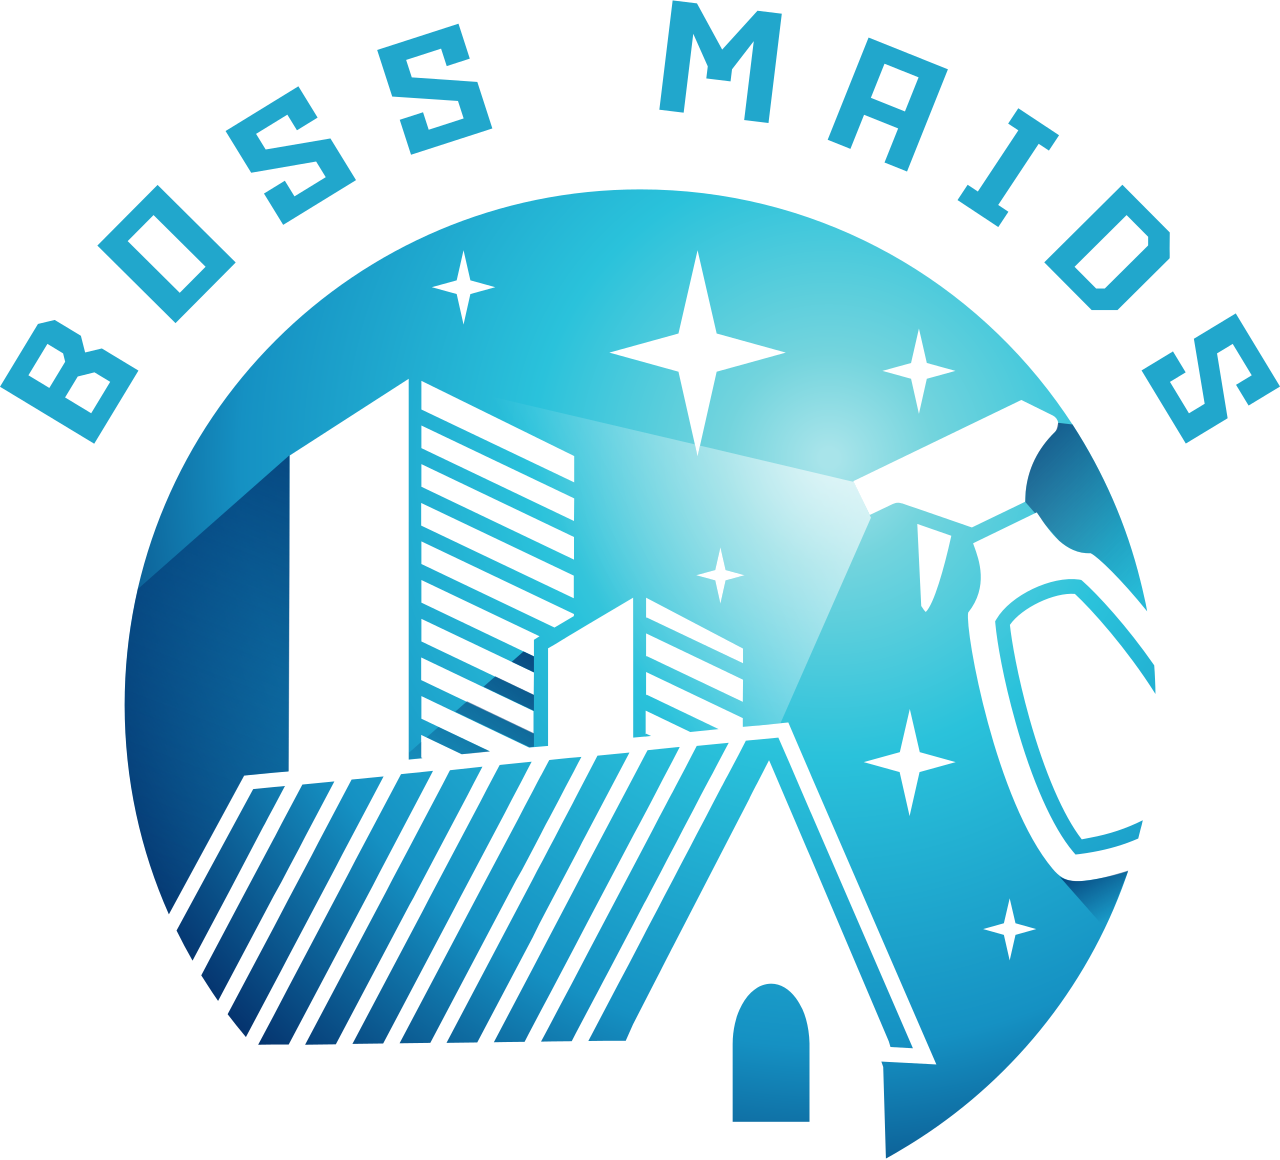 BOSS MAIDS's web page